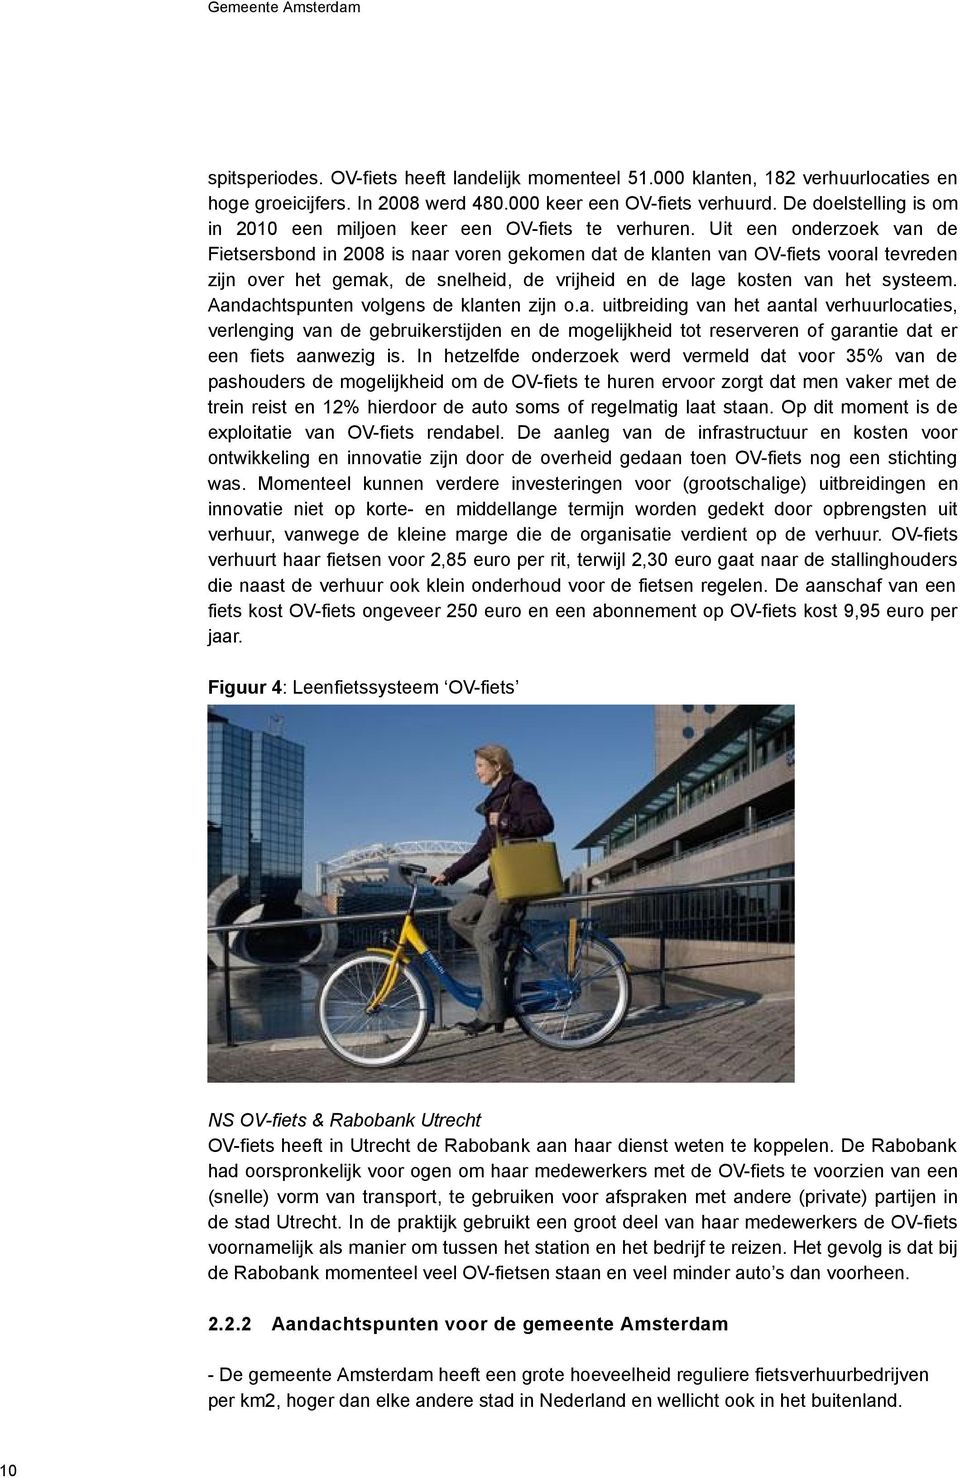 Uit een onderzoek van de Fietsersbond in 2008 is naar voren gekomen dat de klanten van OV-fiets vooral tevreden zijn over het gemak, de snelheid, de vrijheid en de lage kosten van het systeem.